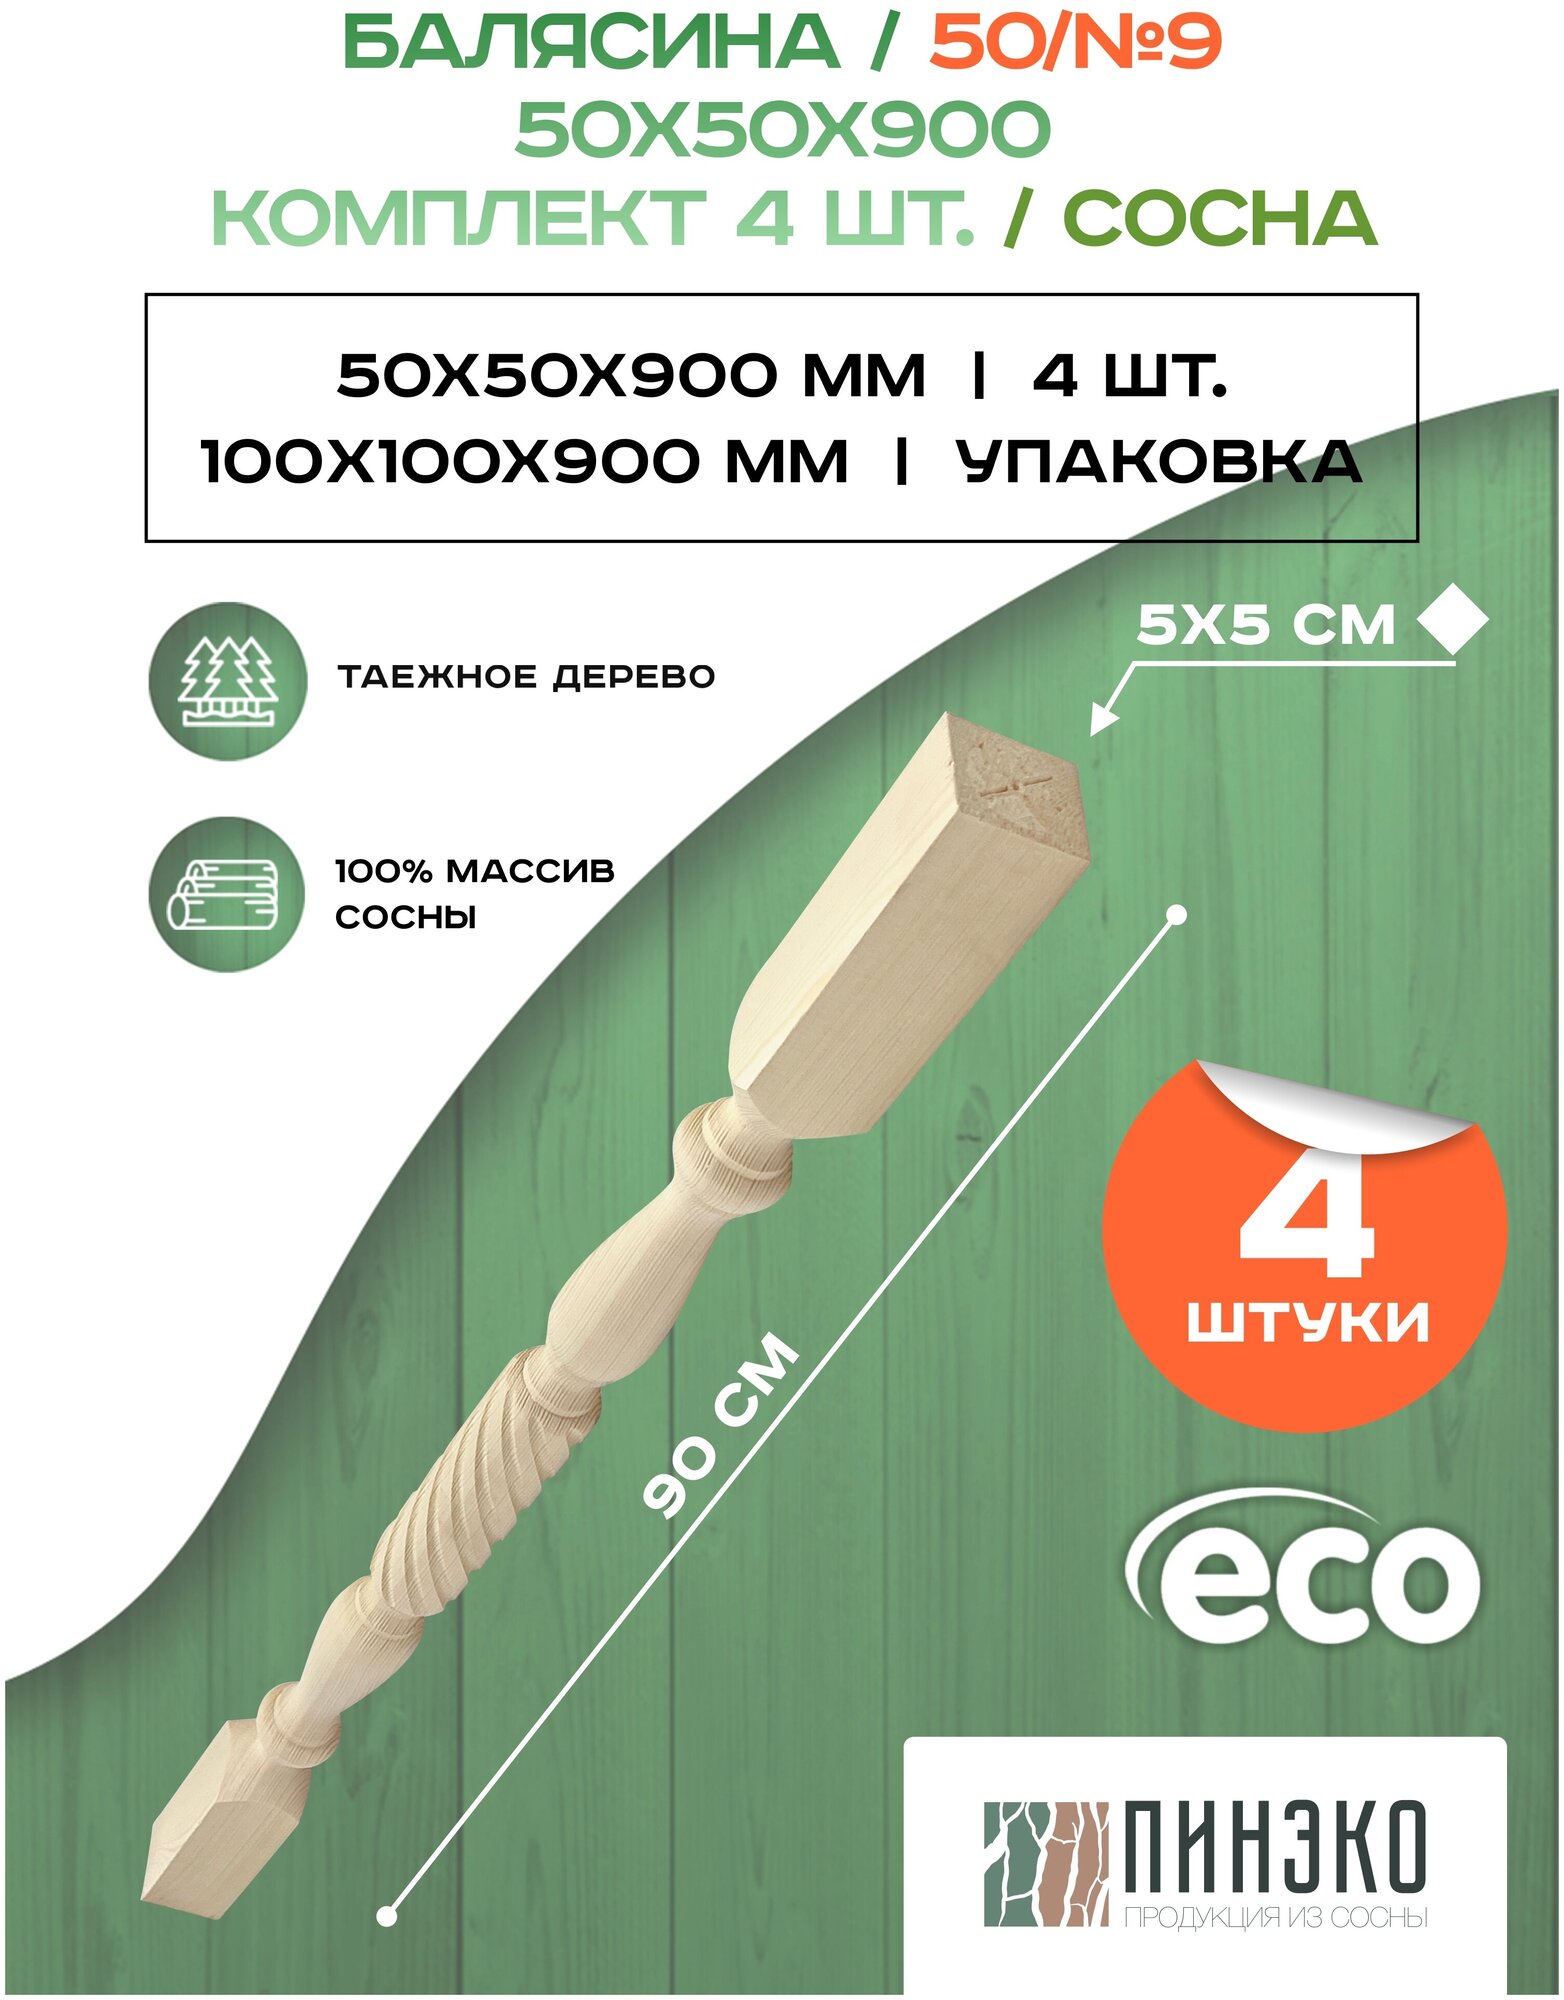 Набор 4 балясины деревянные 900х50х50мм / сращенная / ограждение для лестницы балюстрада из сосны премиум АА модель 50AN9